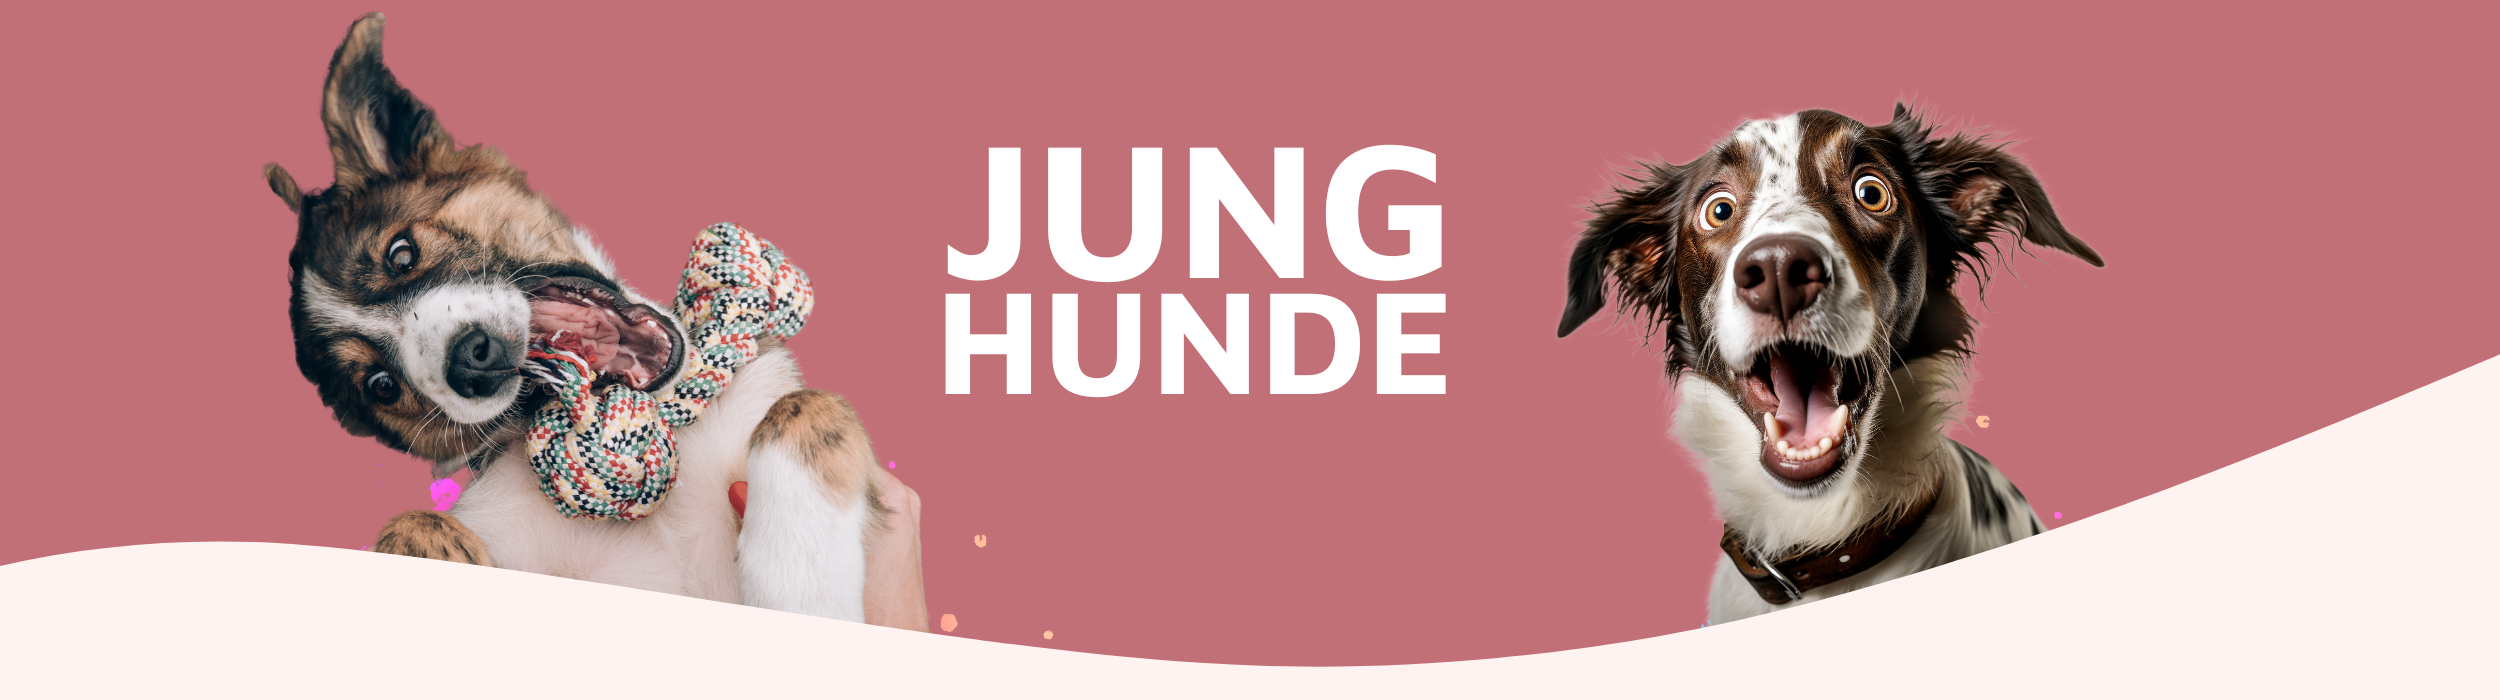 Onlinehundeschule, Onlinehundetraining, Hundeschule, Hundetraining, Trust the dog, Claudia Pauliks, Online Hundeclub